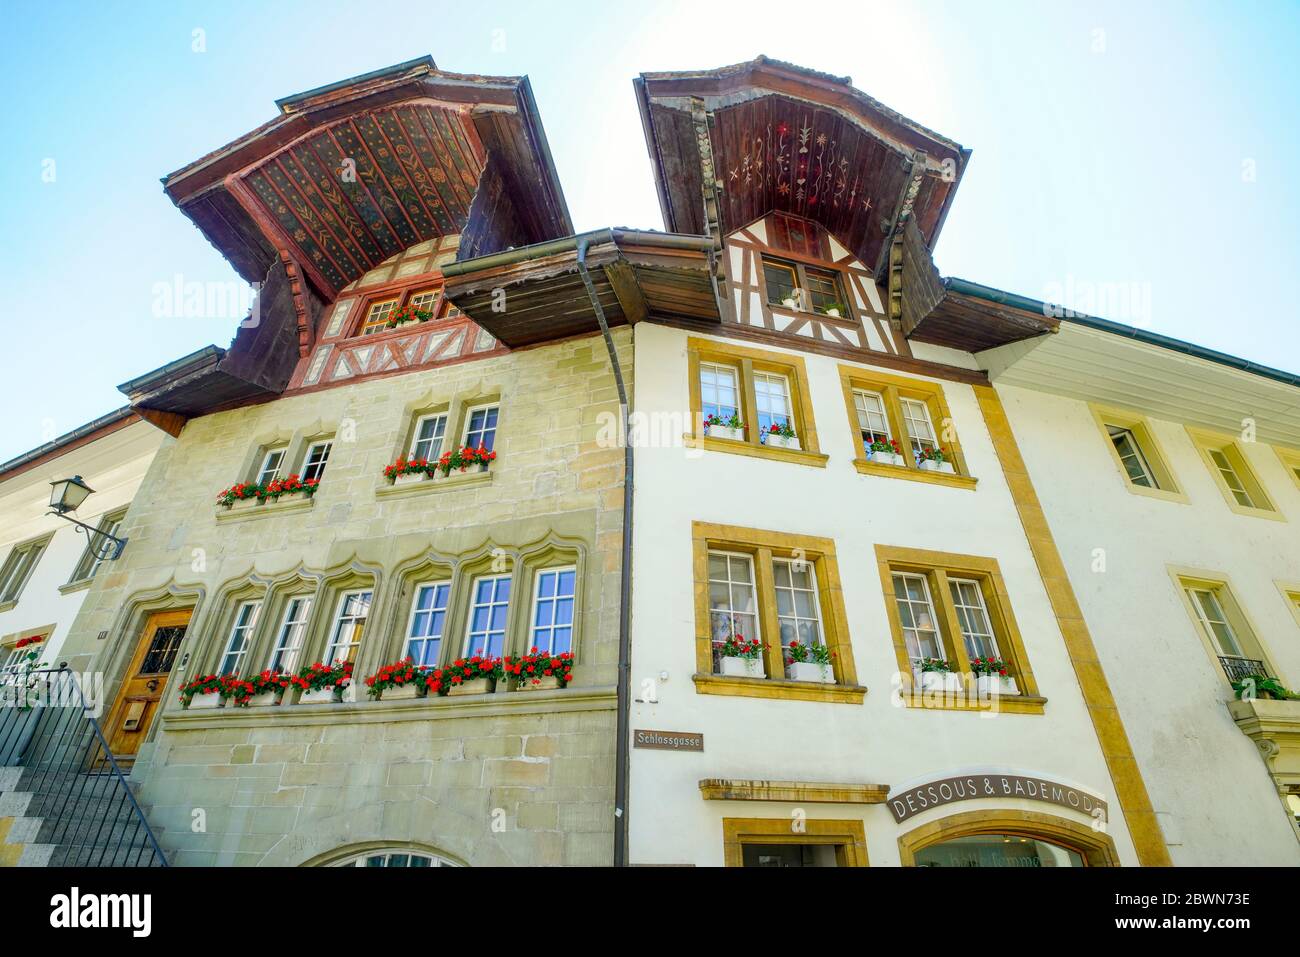 Hous avec plafond peint par Schlossgasse à Murten (Morat). Canton de Fribourg, Suisse. Banque D'Images